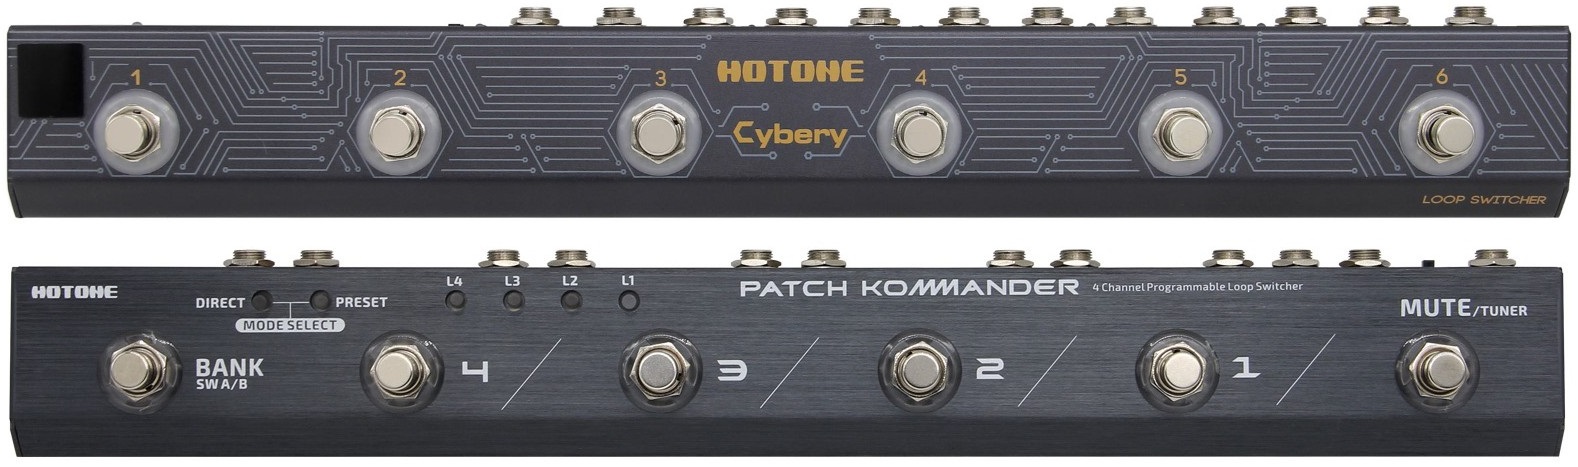 Hotone Cybery EC-10 ホットトーン MIDI対応プログラマブル 